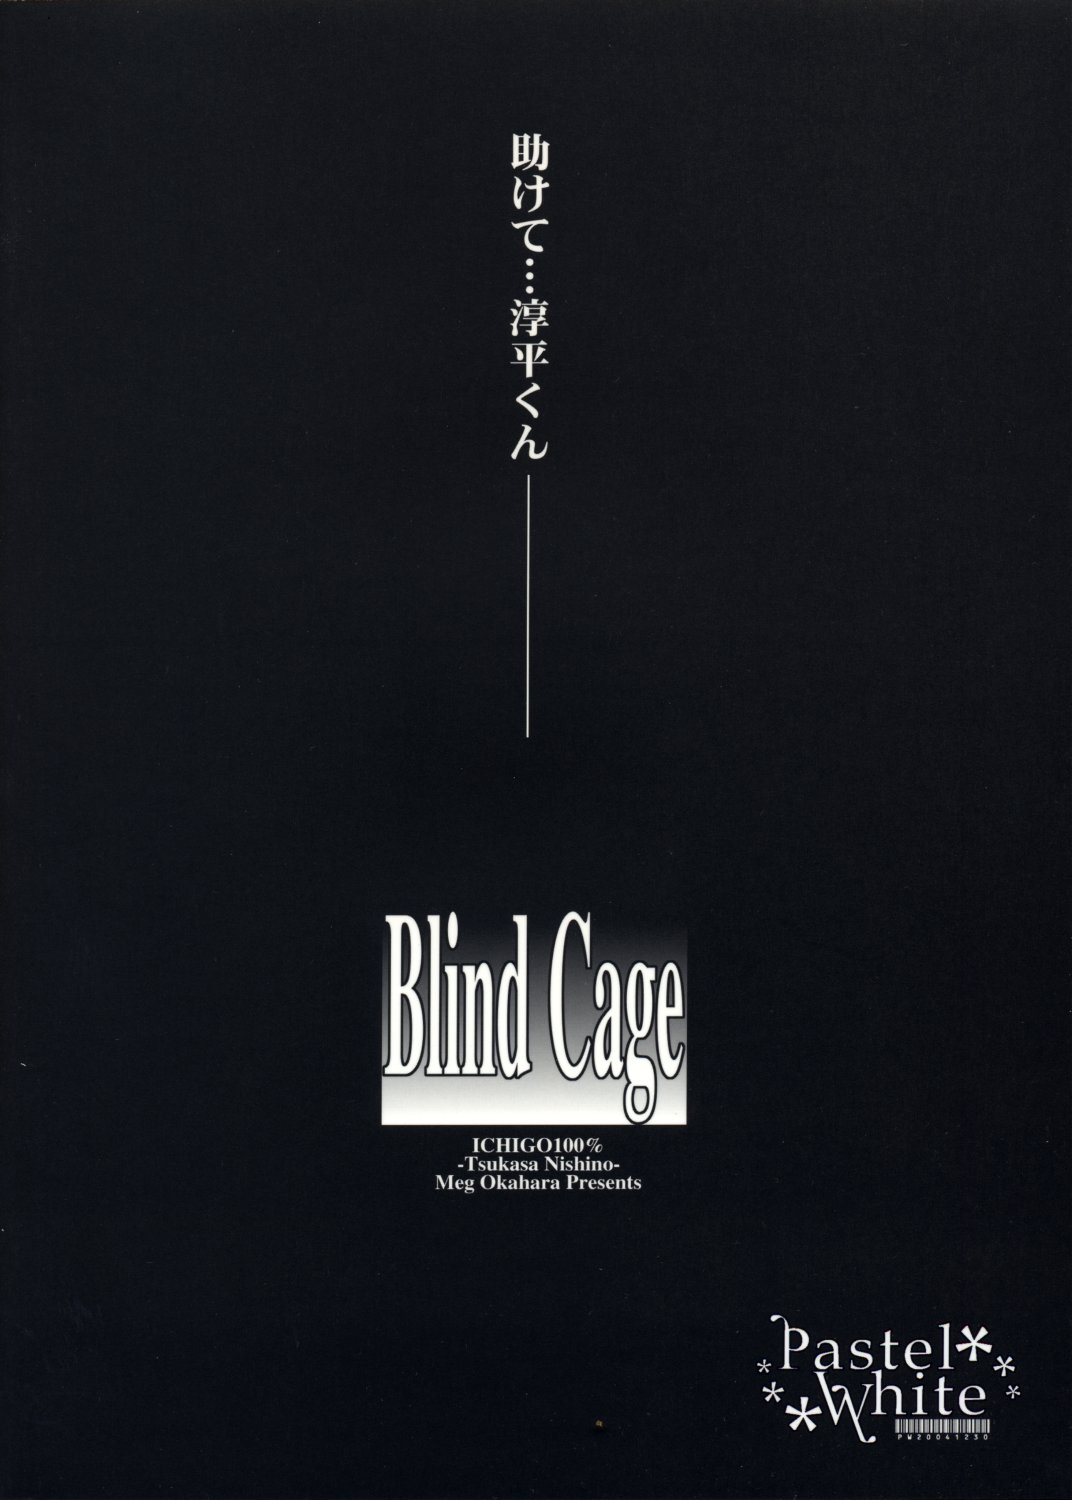 [Pastel White] Blind Cage (Ichigo 100%) 